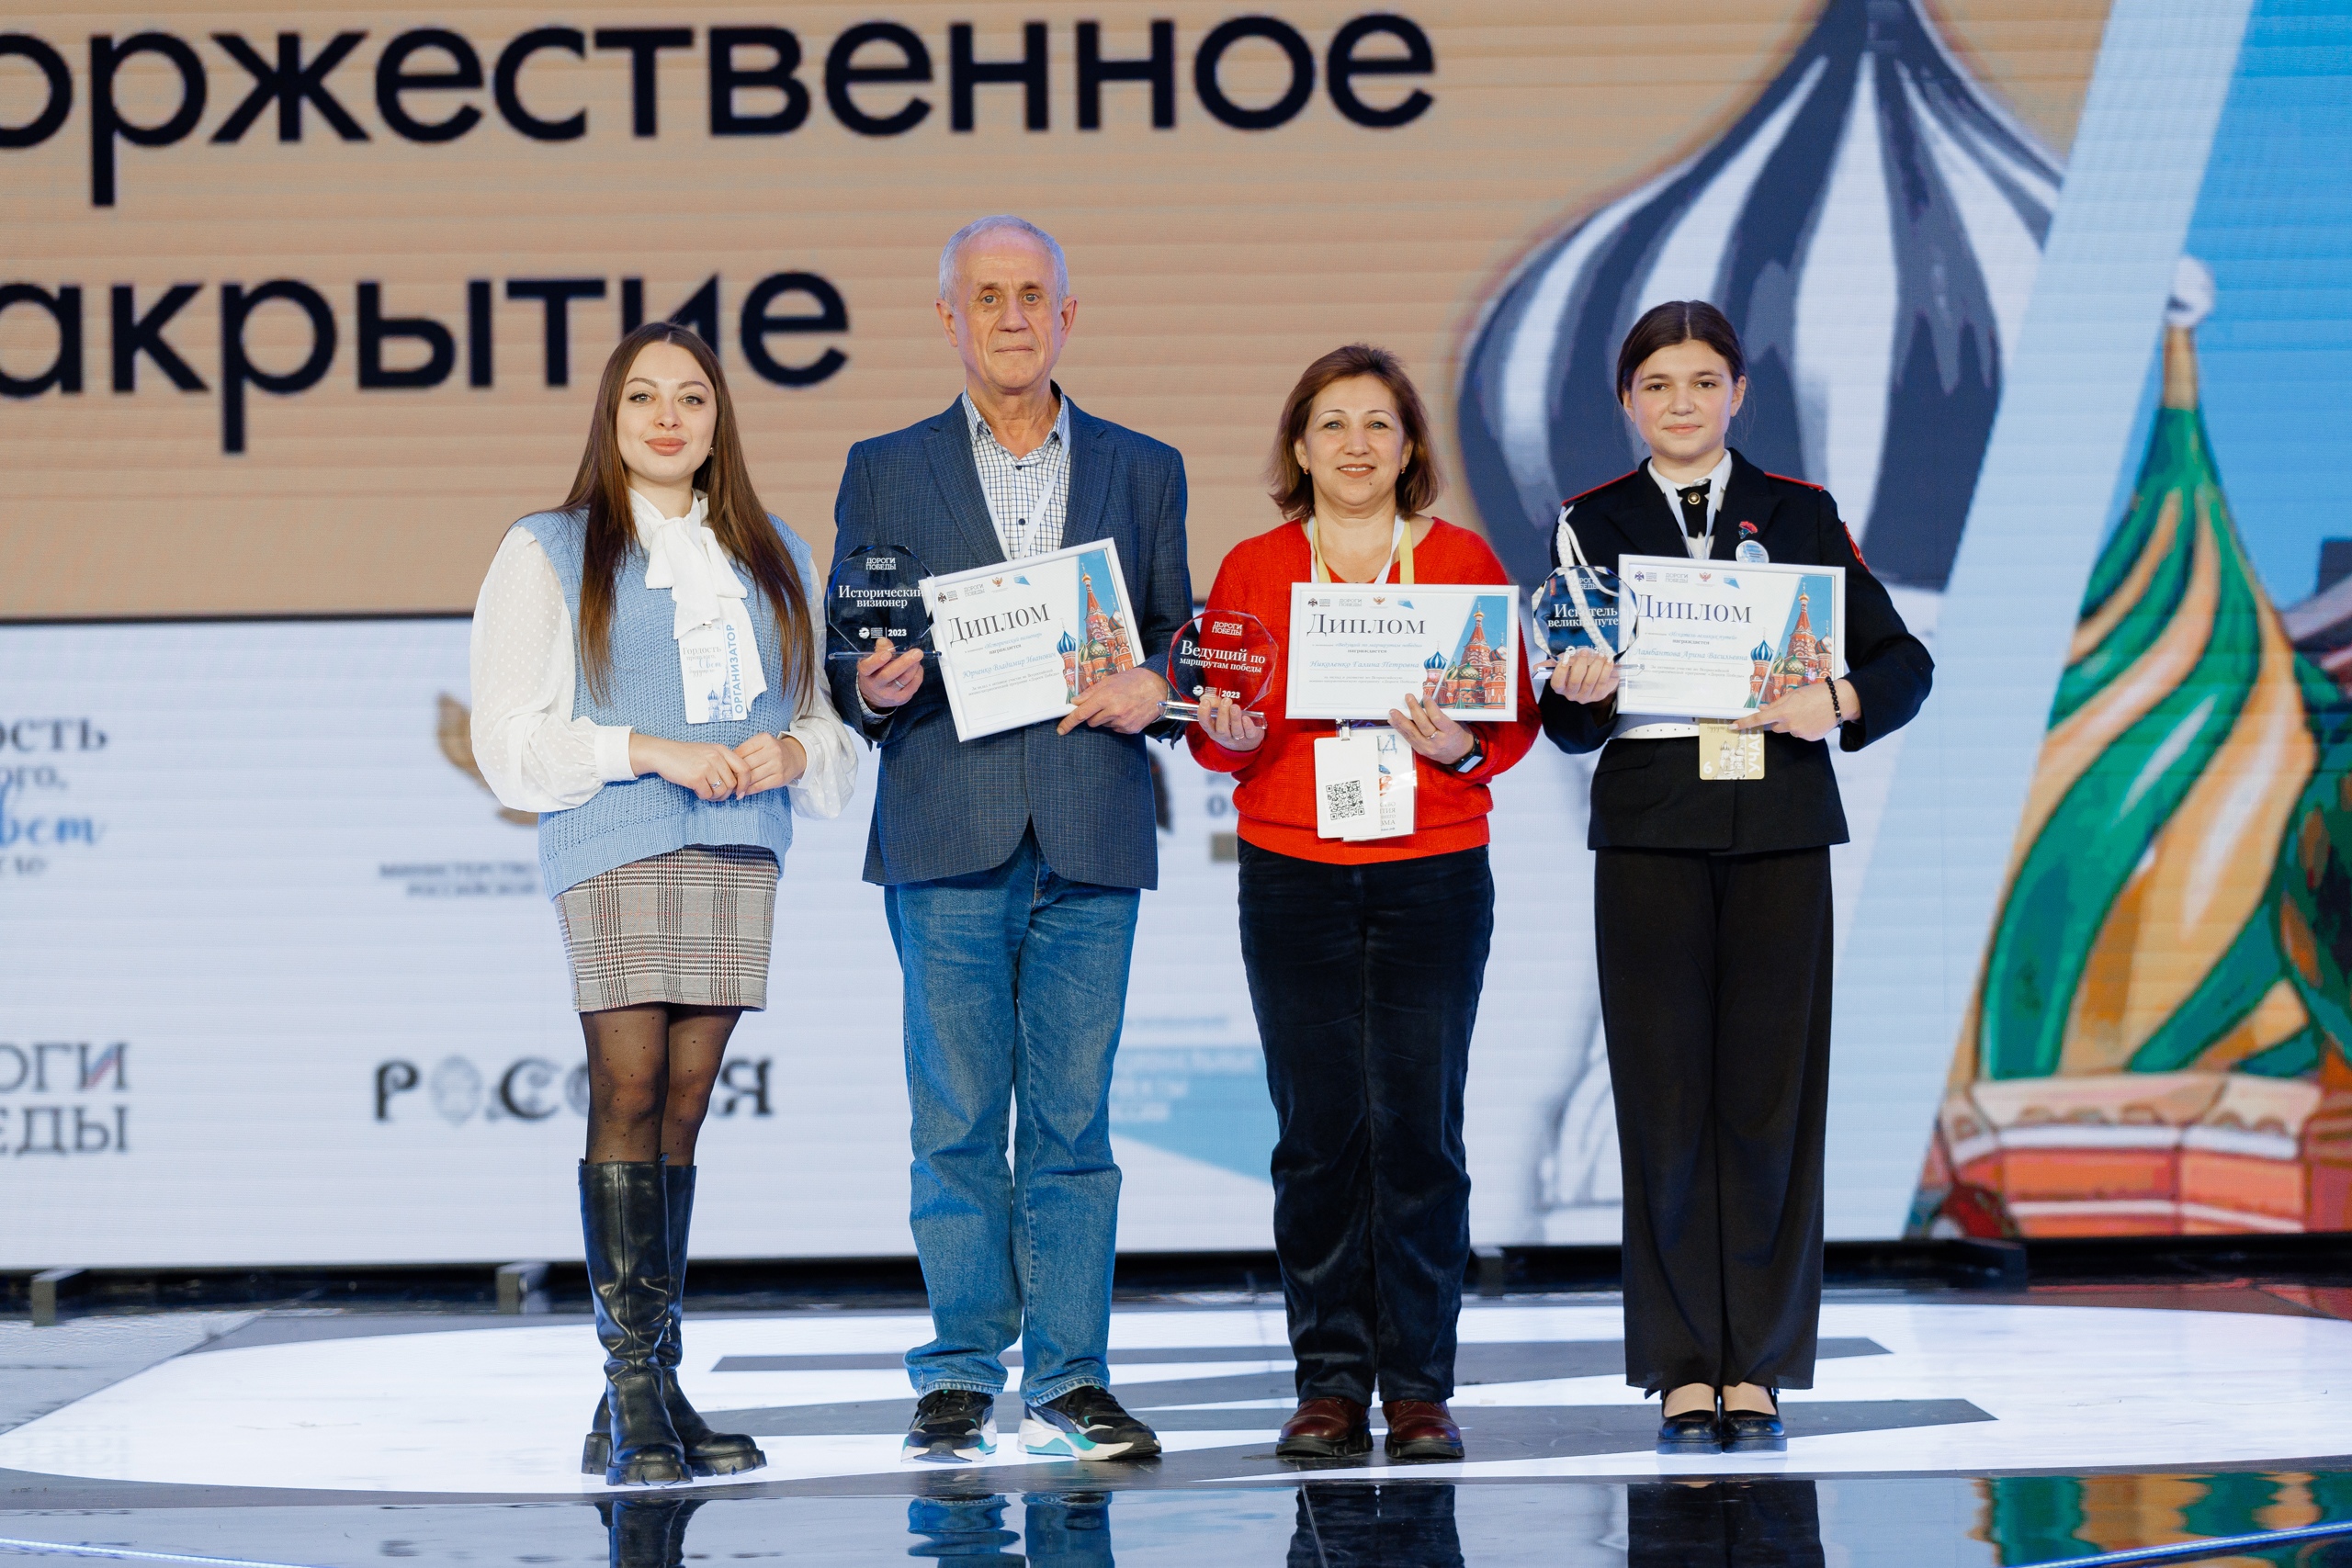 Итоги Всероссийского фестиваля «Гордость прошлого – свет будущего» были подведены на торжественном закрытии.